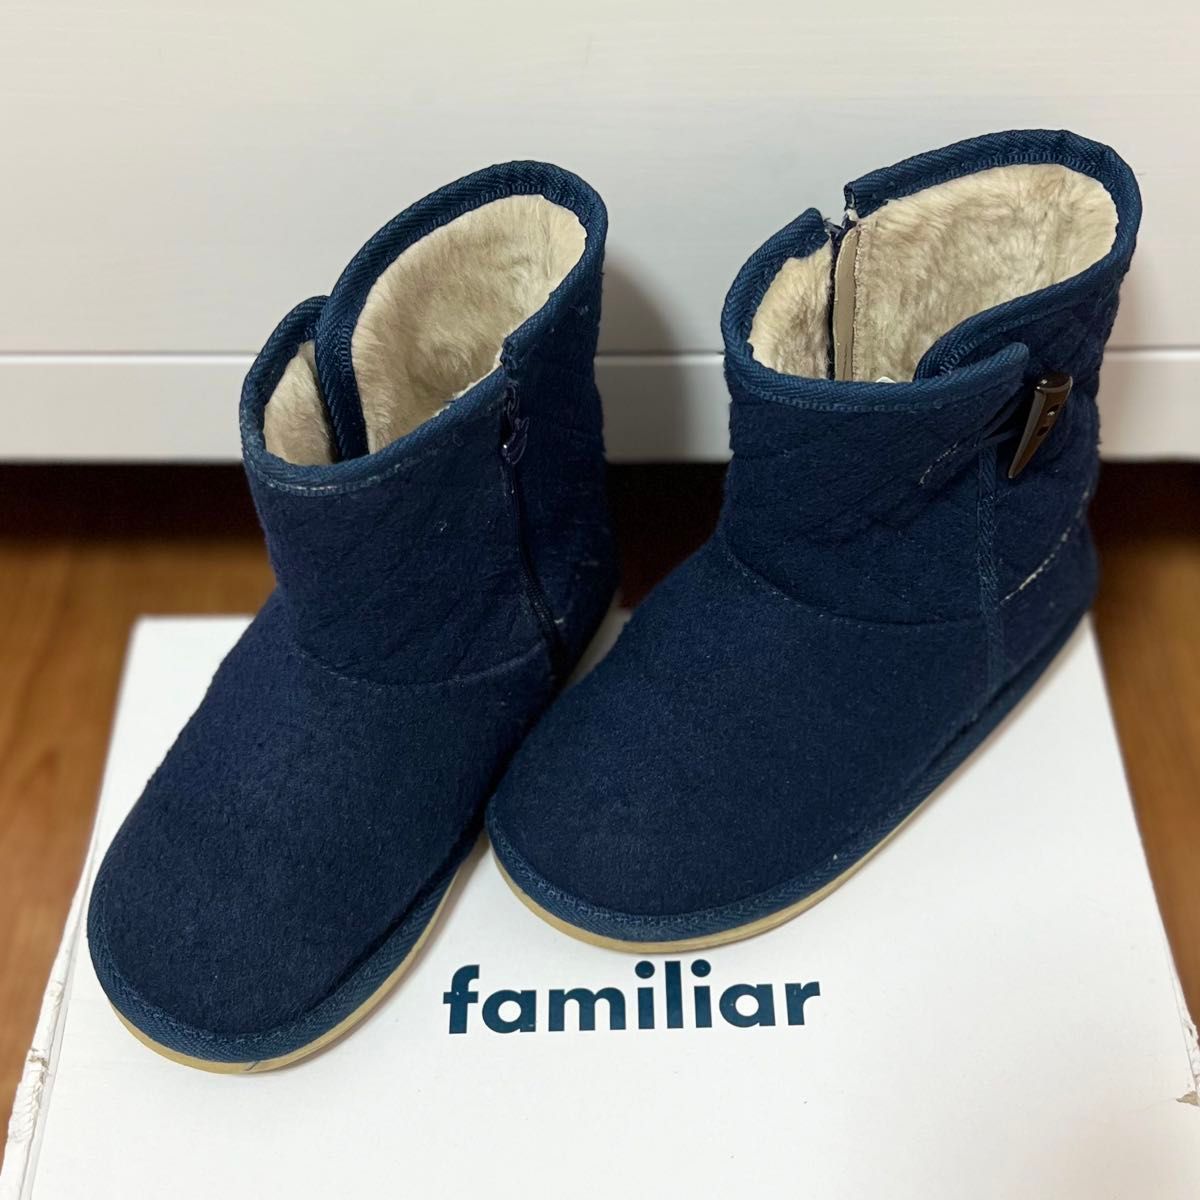 familiarファミリア ショートブーツ ブルー 20cm - ブーツ